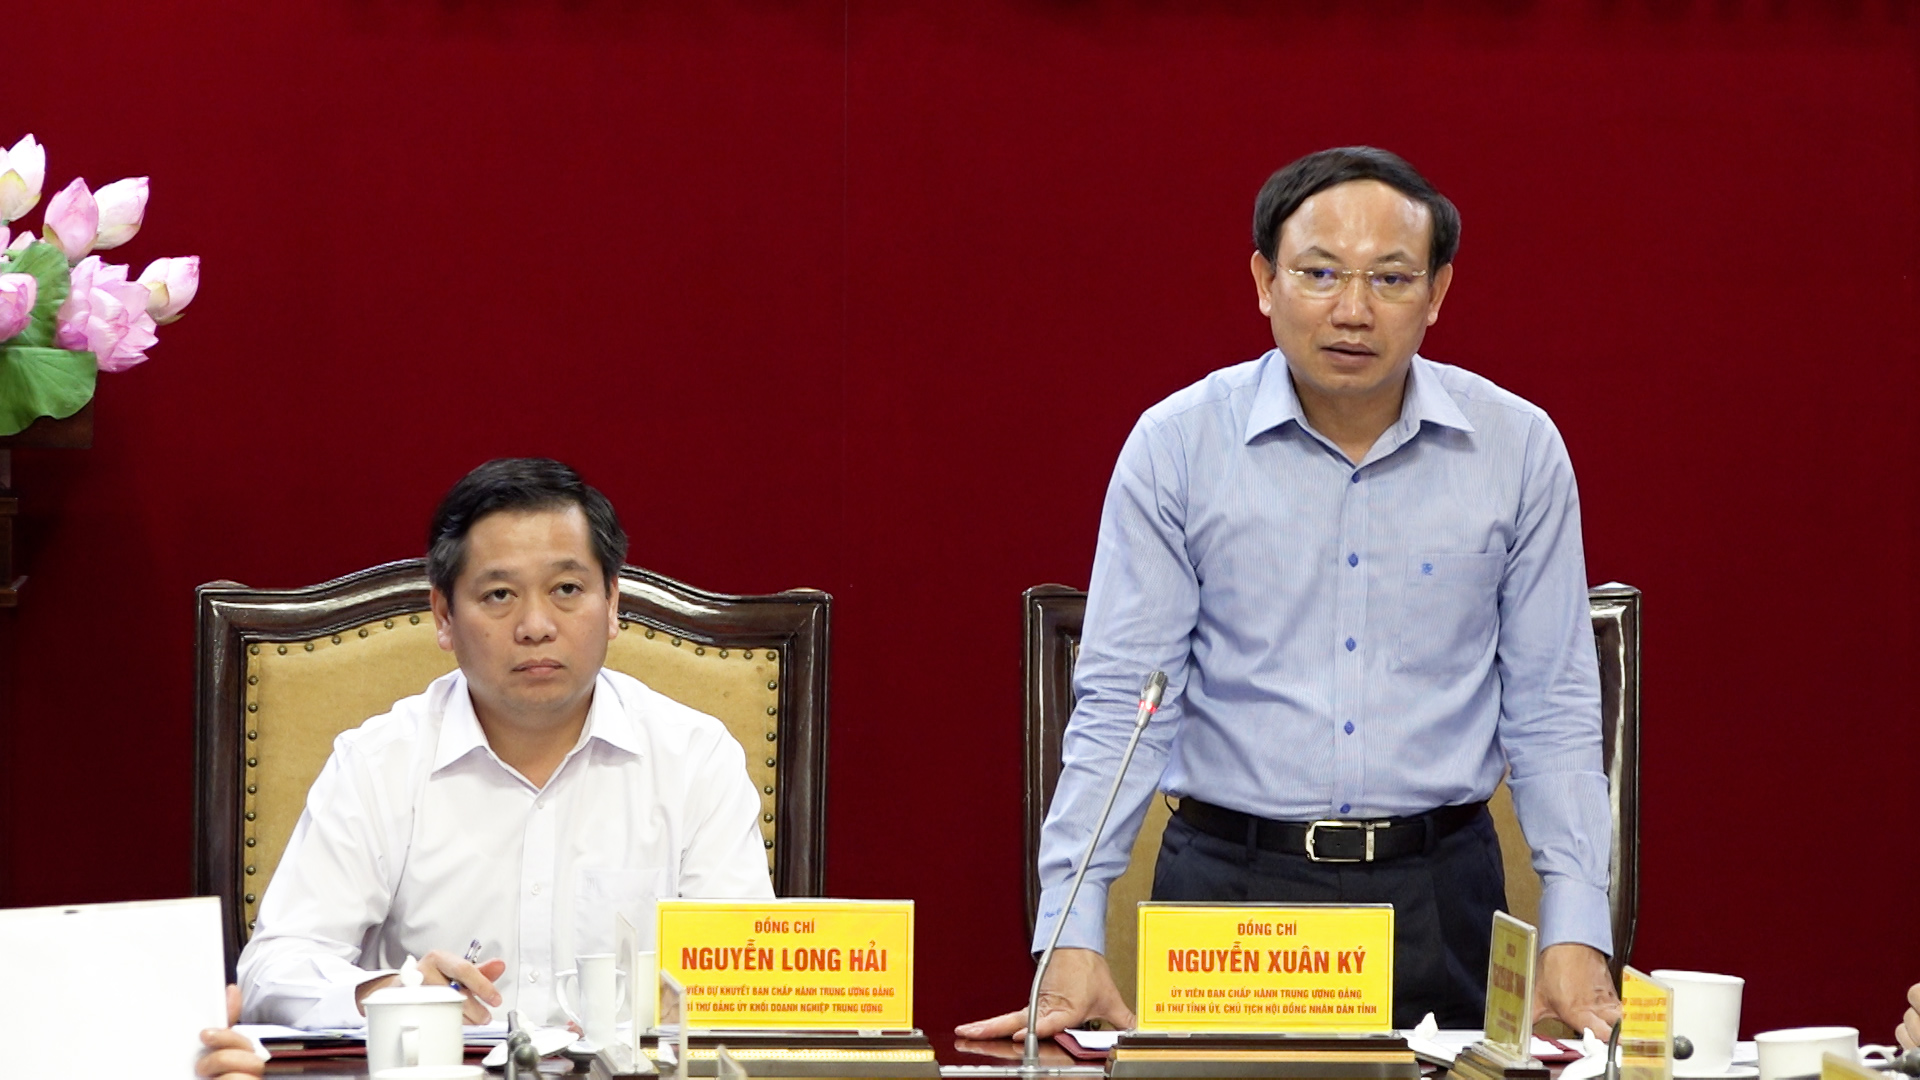 Đồng chí Nguyễn Xuân Ký, Uỷ viên Ban Chấp hành Trung ương Đảng, Bí thư Tỉnh uỷ Quảng Ninh phát biểu tại hội nghị